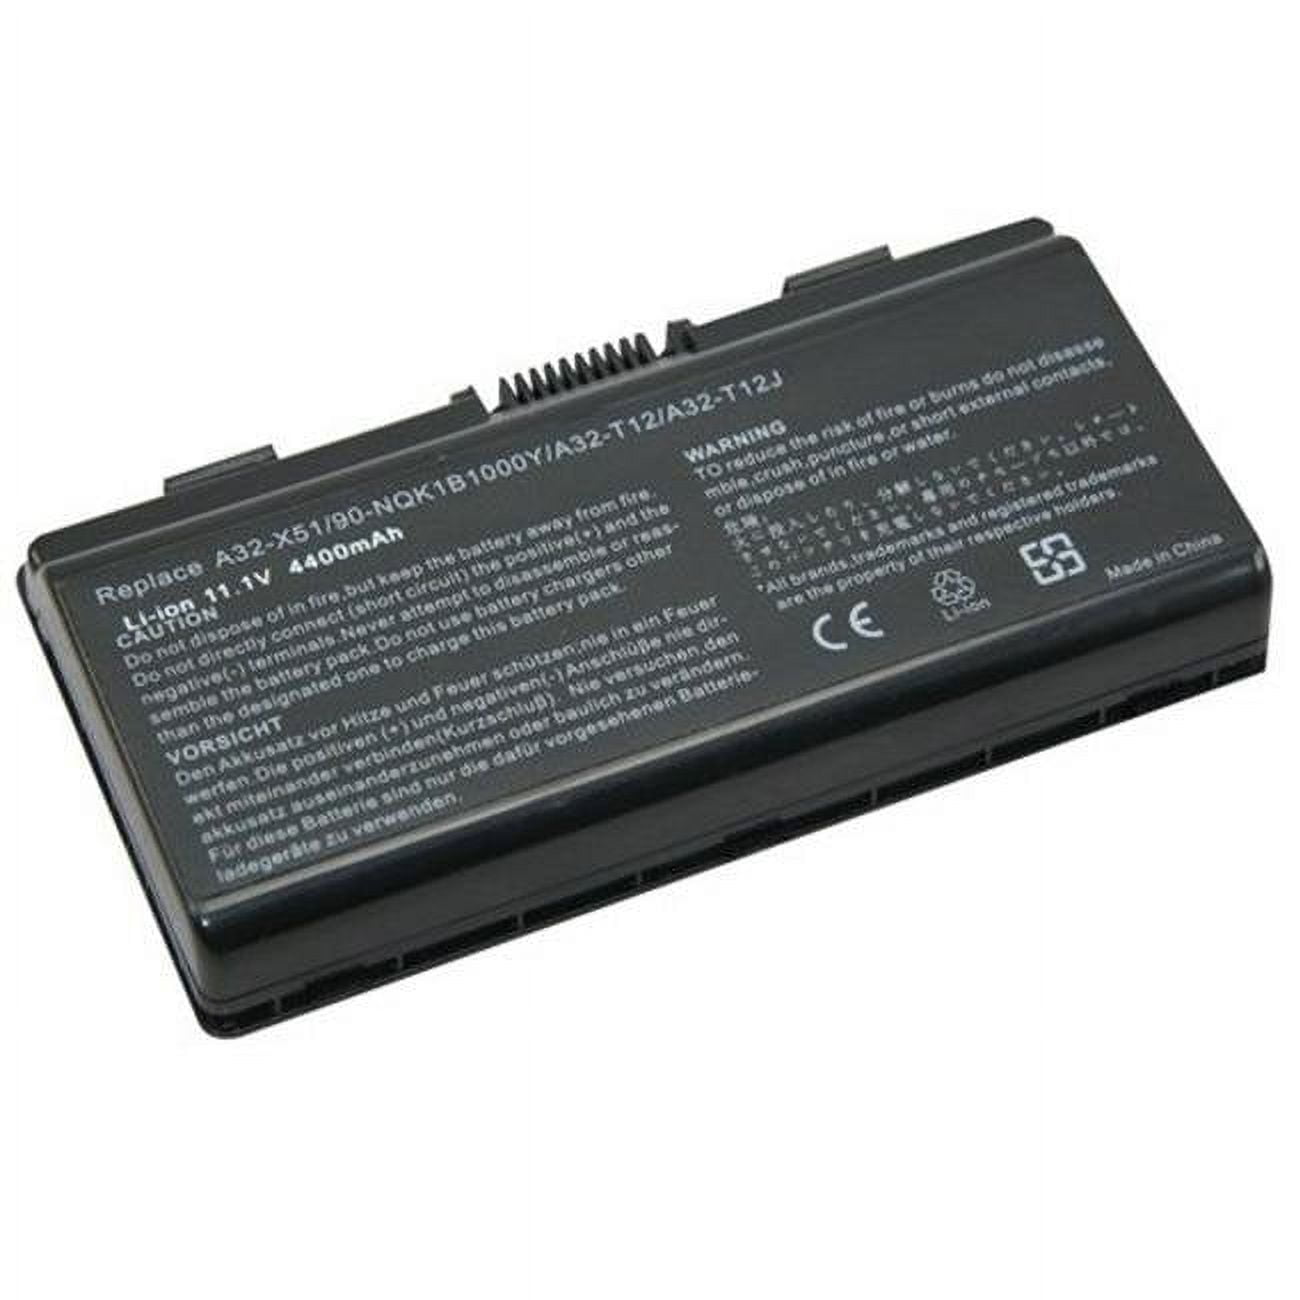 Dantona NM-A32-T12 6 Cell Replacement Laptop Battery for Asus - 11.1V -  Dantona Industries